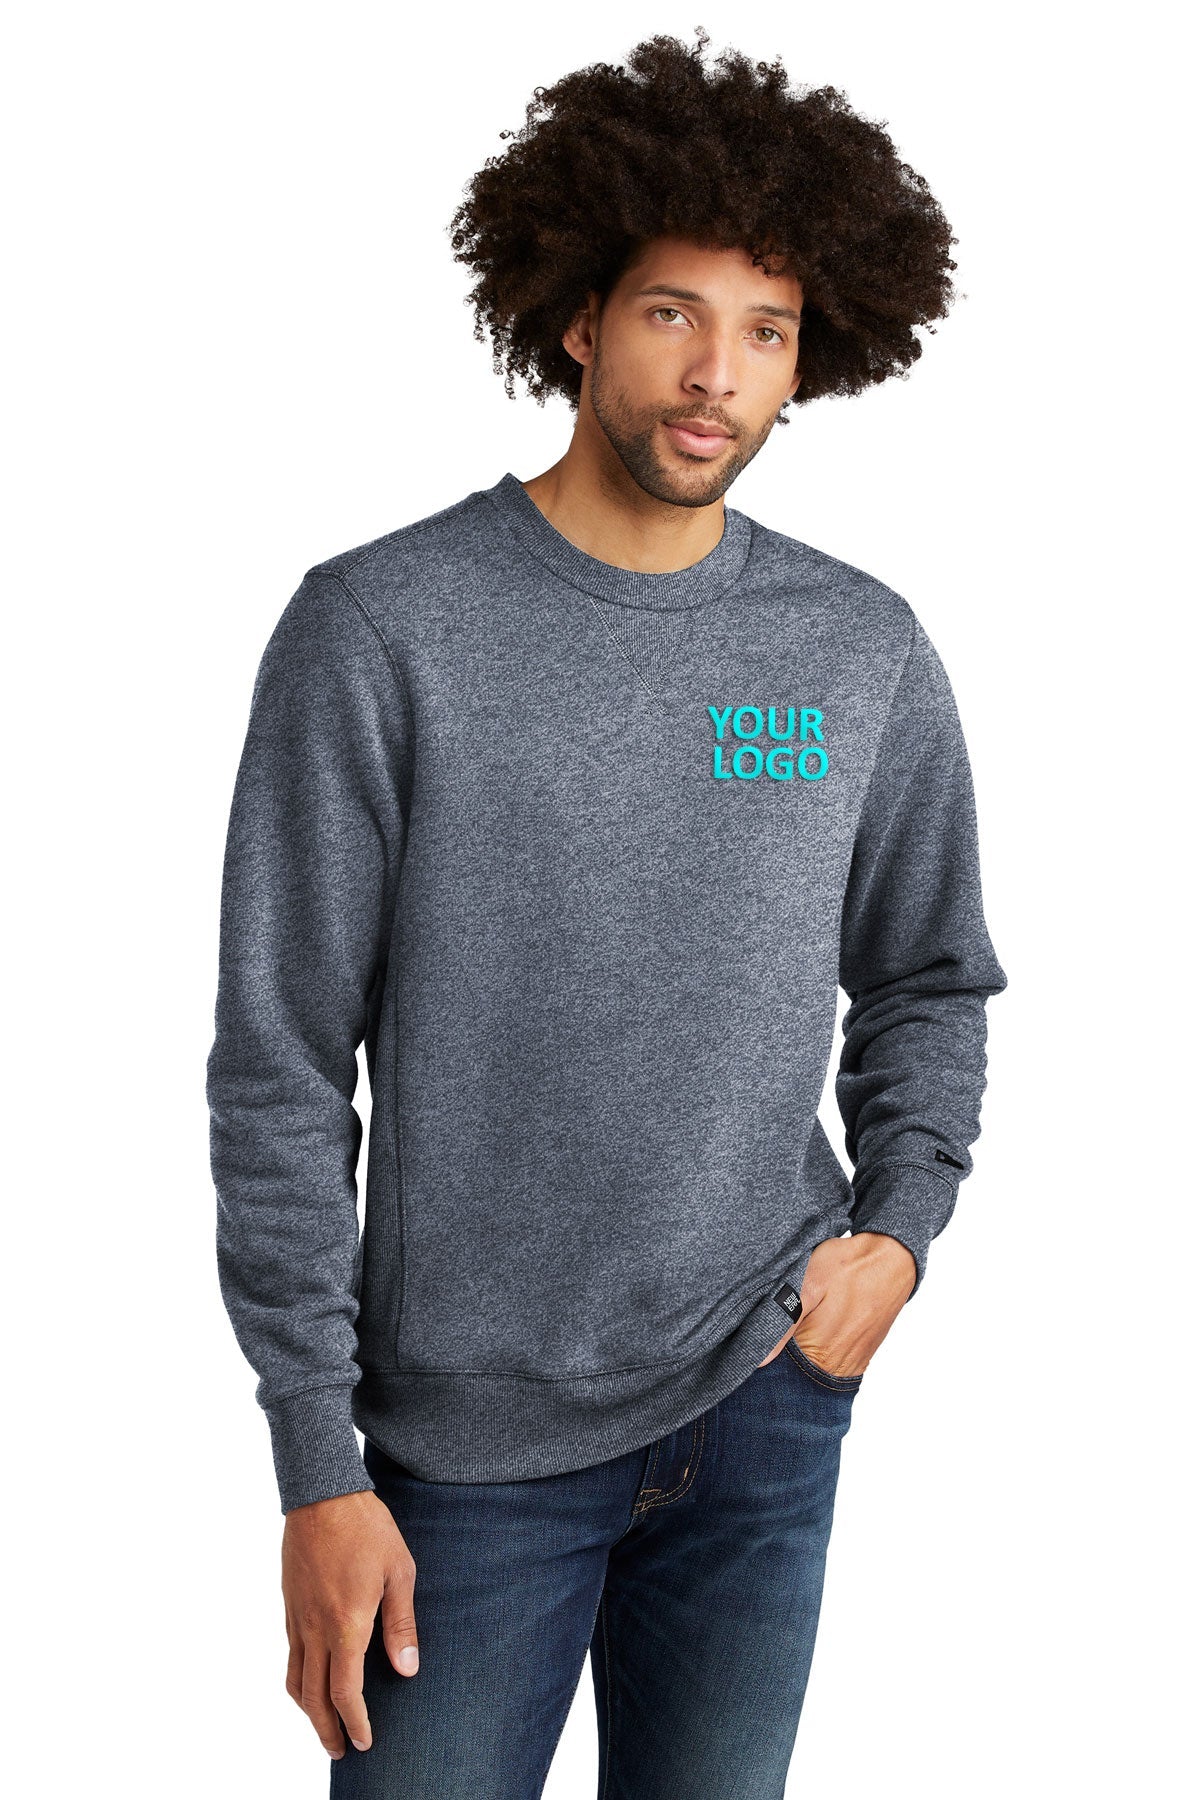 New Era French Terry Customized Sweatshirts, True Navy Twist